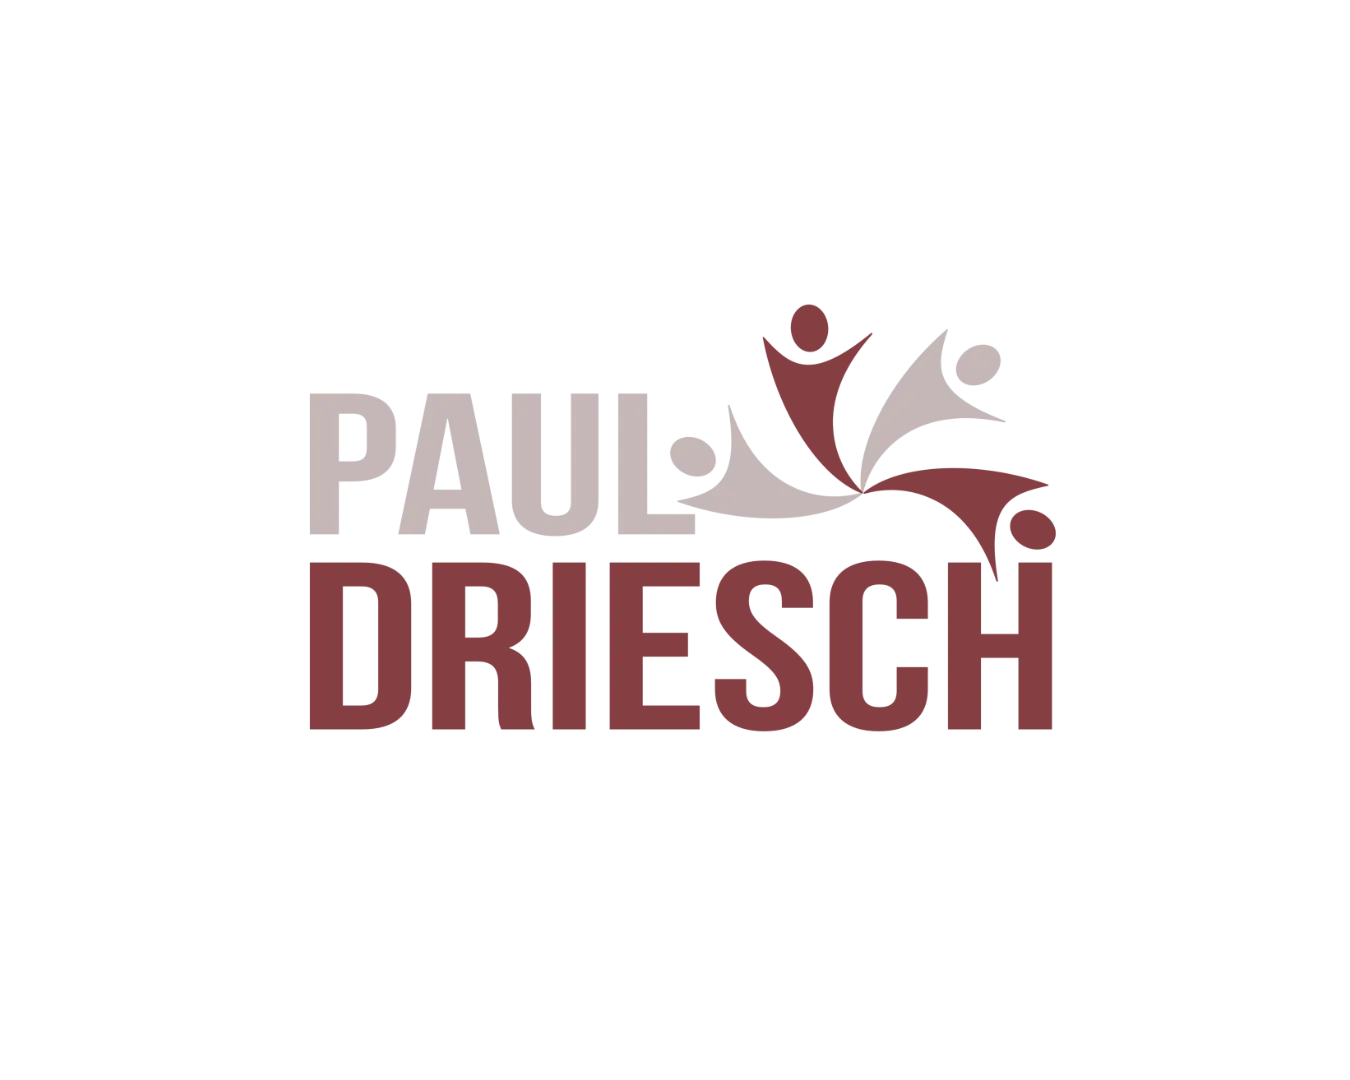 Paul Driesch Kemmenau Logo